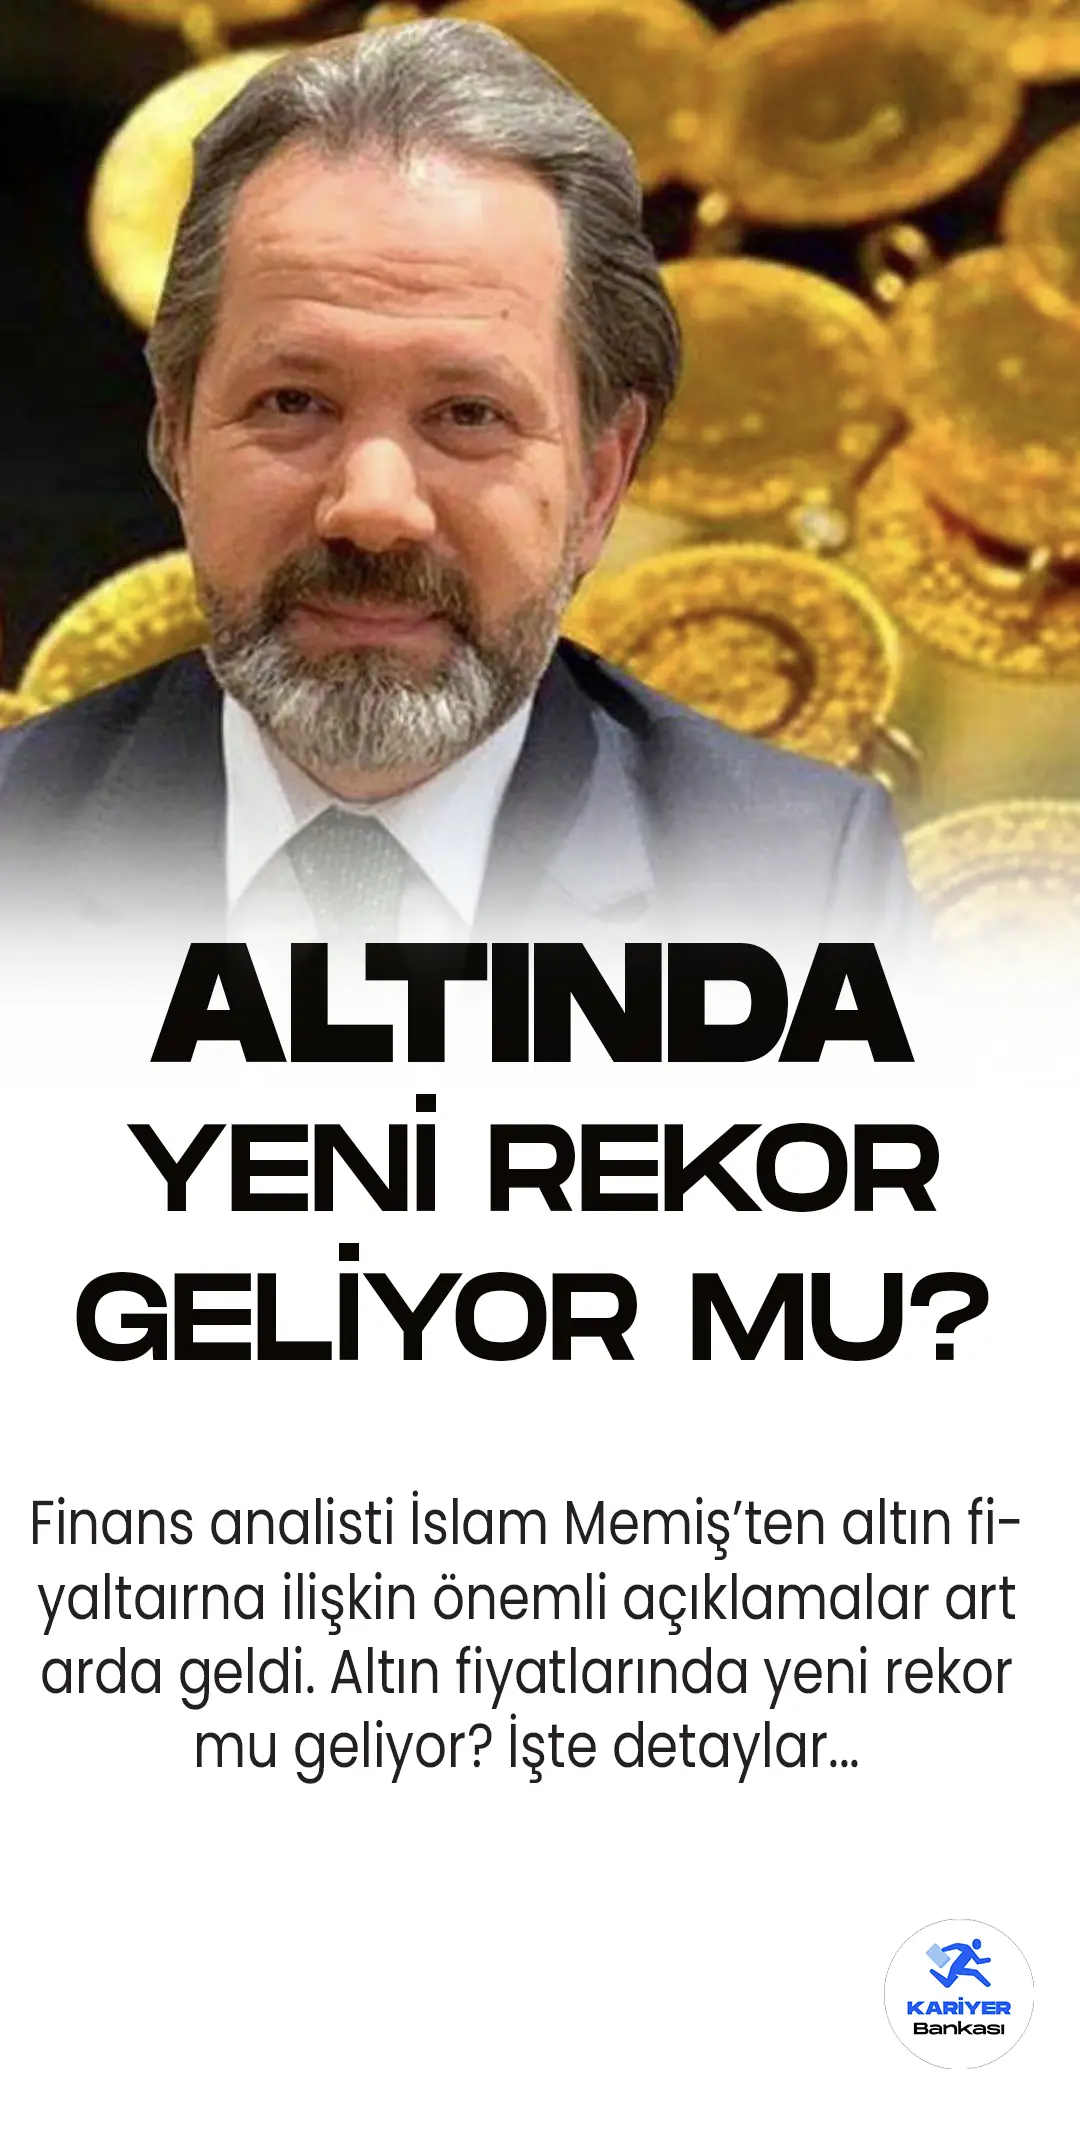 Finans analisti İslam Memiş, CNN Türk'te Hasan Selçuk Turan'a altın fiyatları ve piyasalara ilişkin önemli açıklamalarda bulundu.